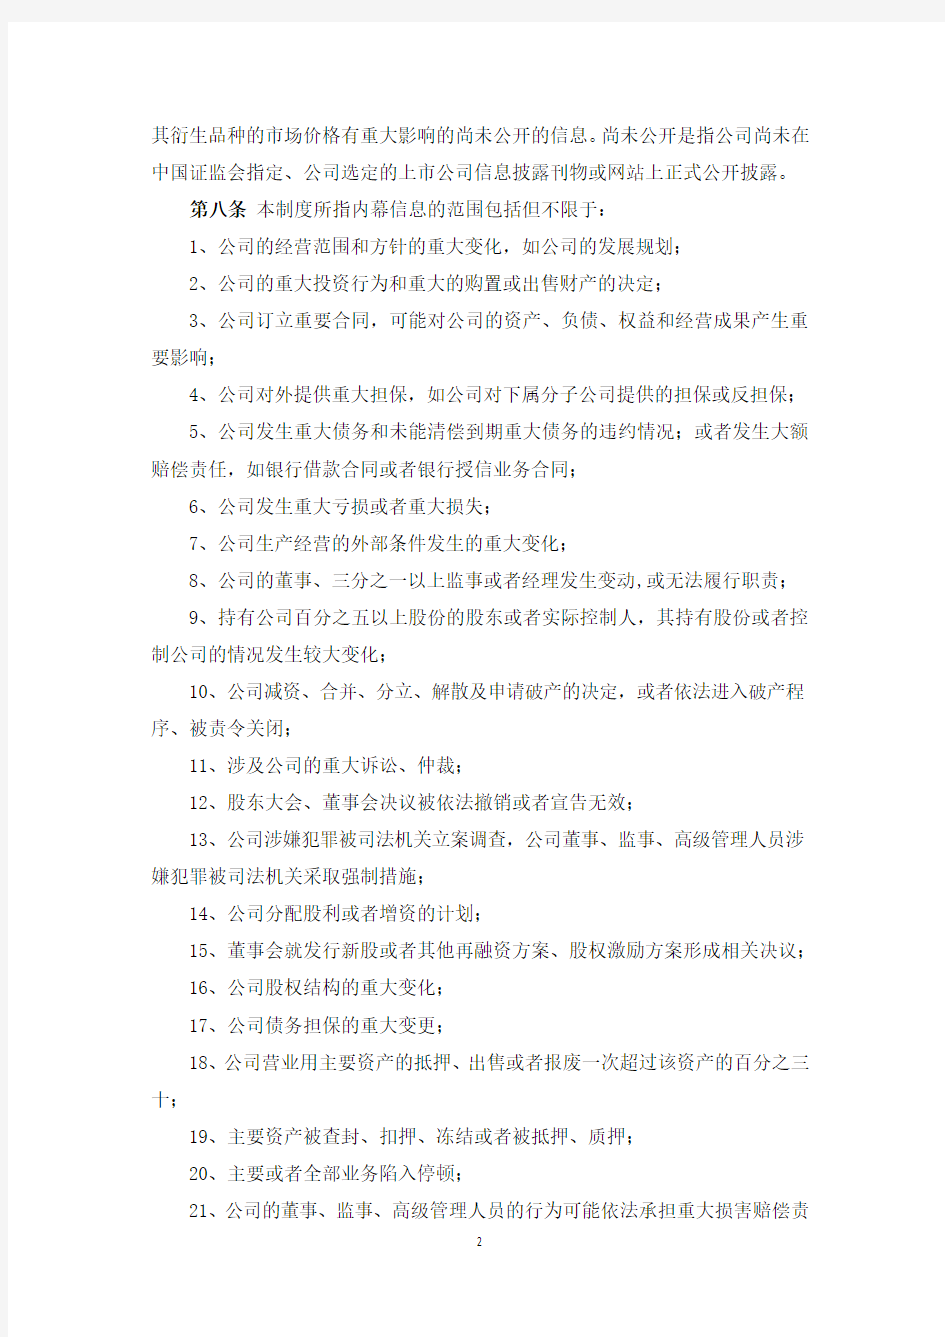 上海汉得信息技术股份有限公司 内幕信息知情人登记制度